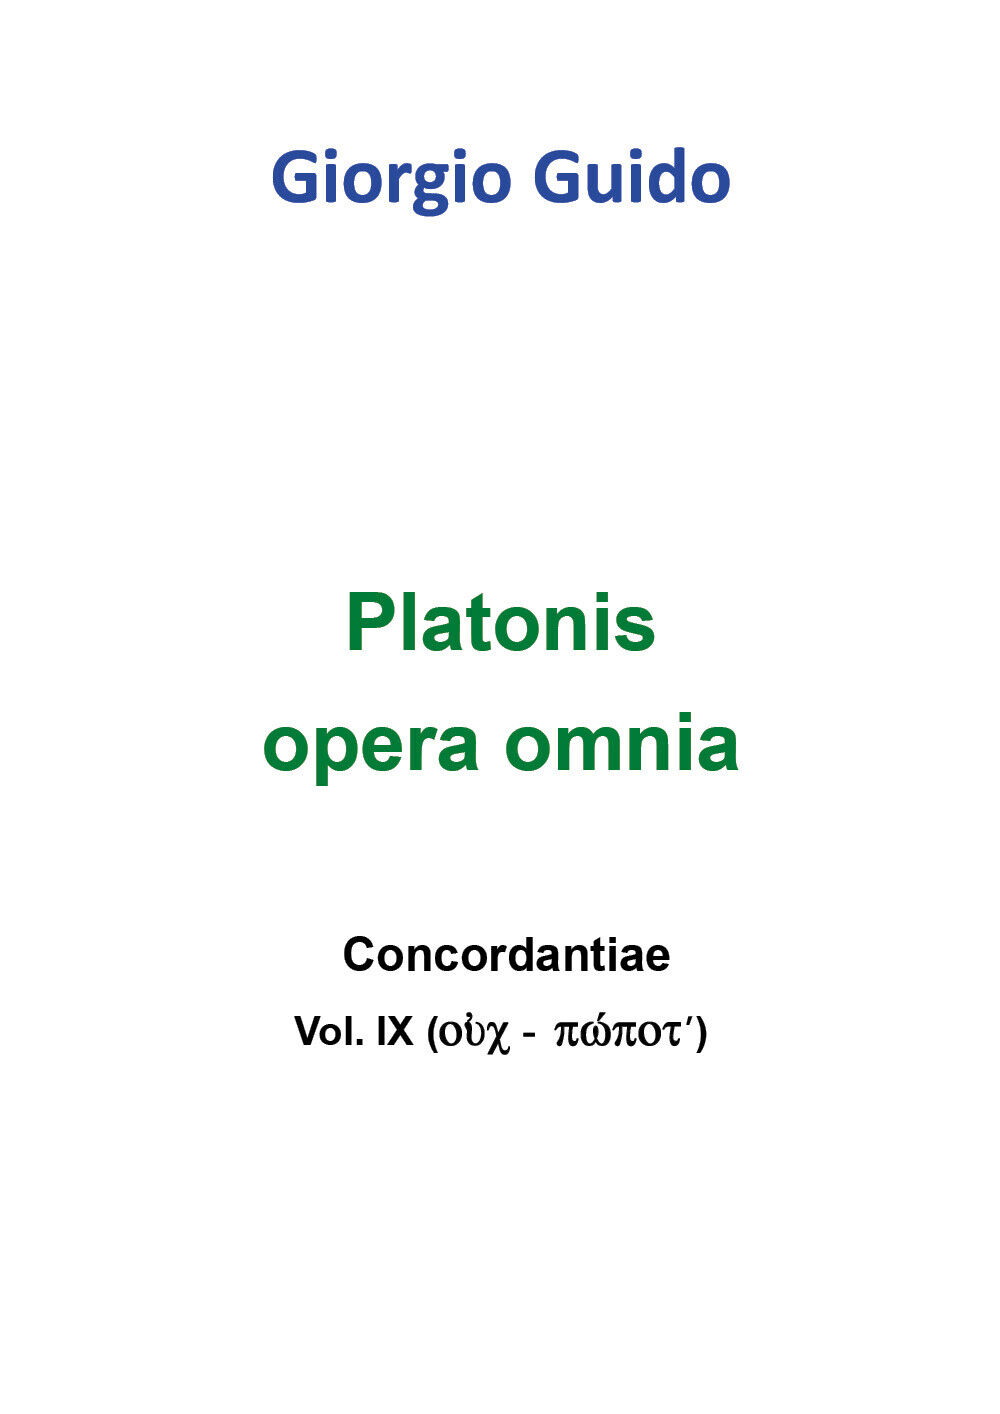 Platonis Opera omnia - Vol. IX -  Giorgio Guido,  Youcanprint - P